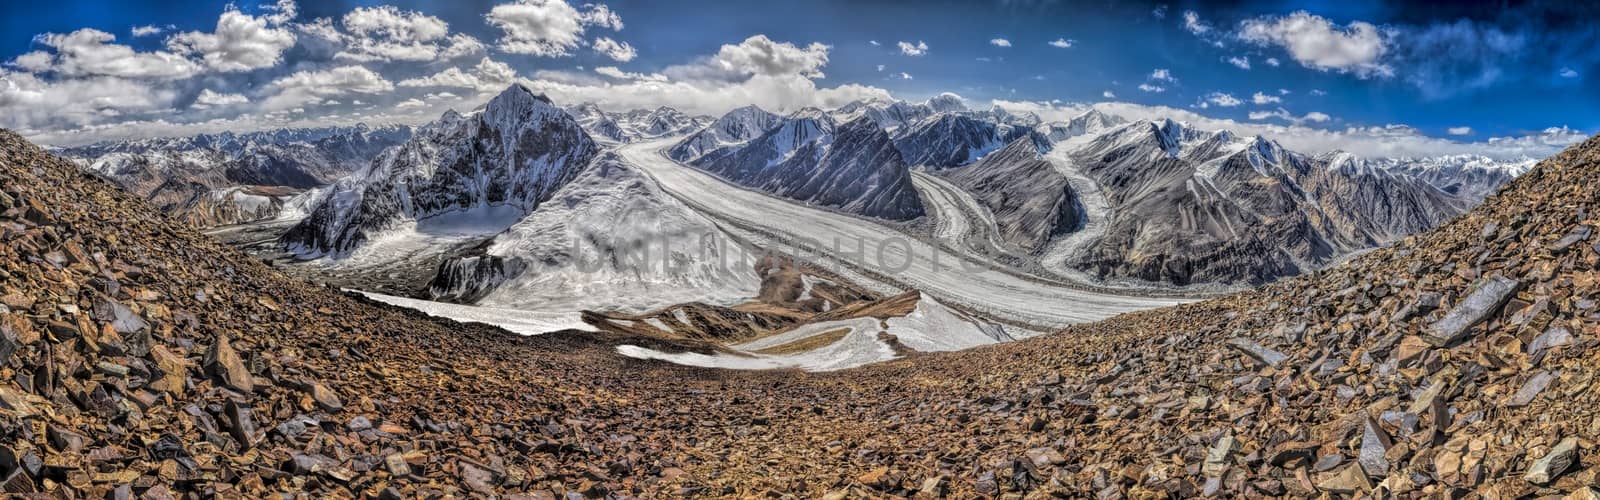 Pamir in Tajikistan by MichalKnitl